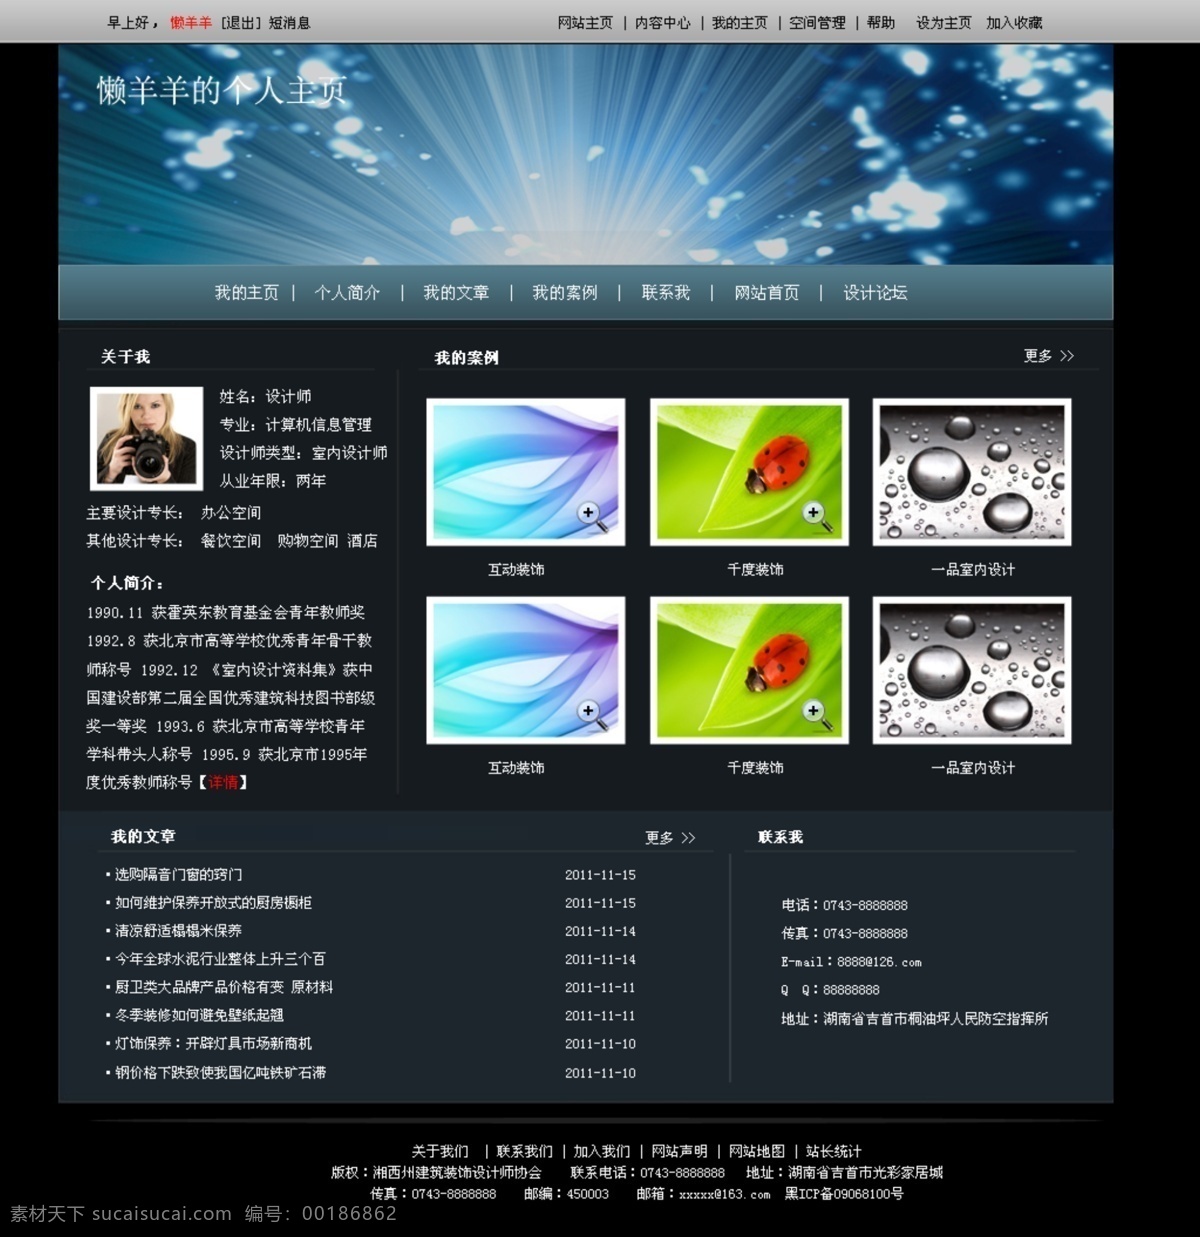 个人主页 产品列表 导航 黑色网站 蓝色科技 网页模板 网站模板 源文件 新闻列表 中文模板 网页素材 导航菜单